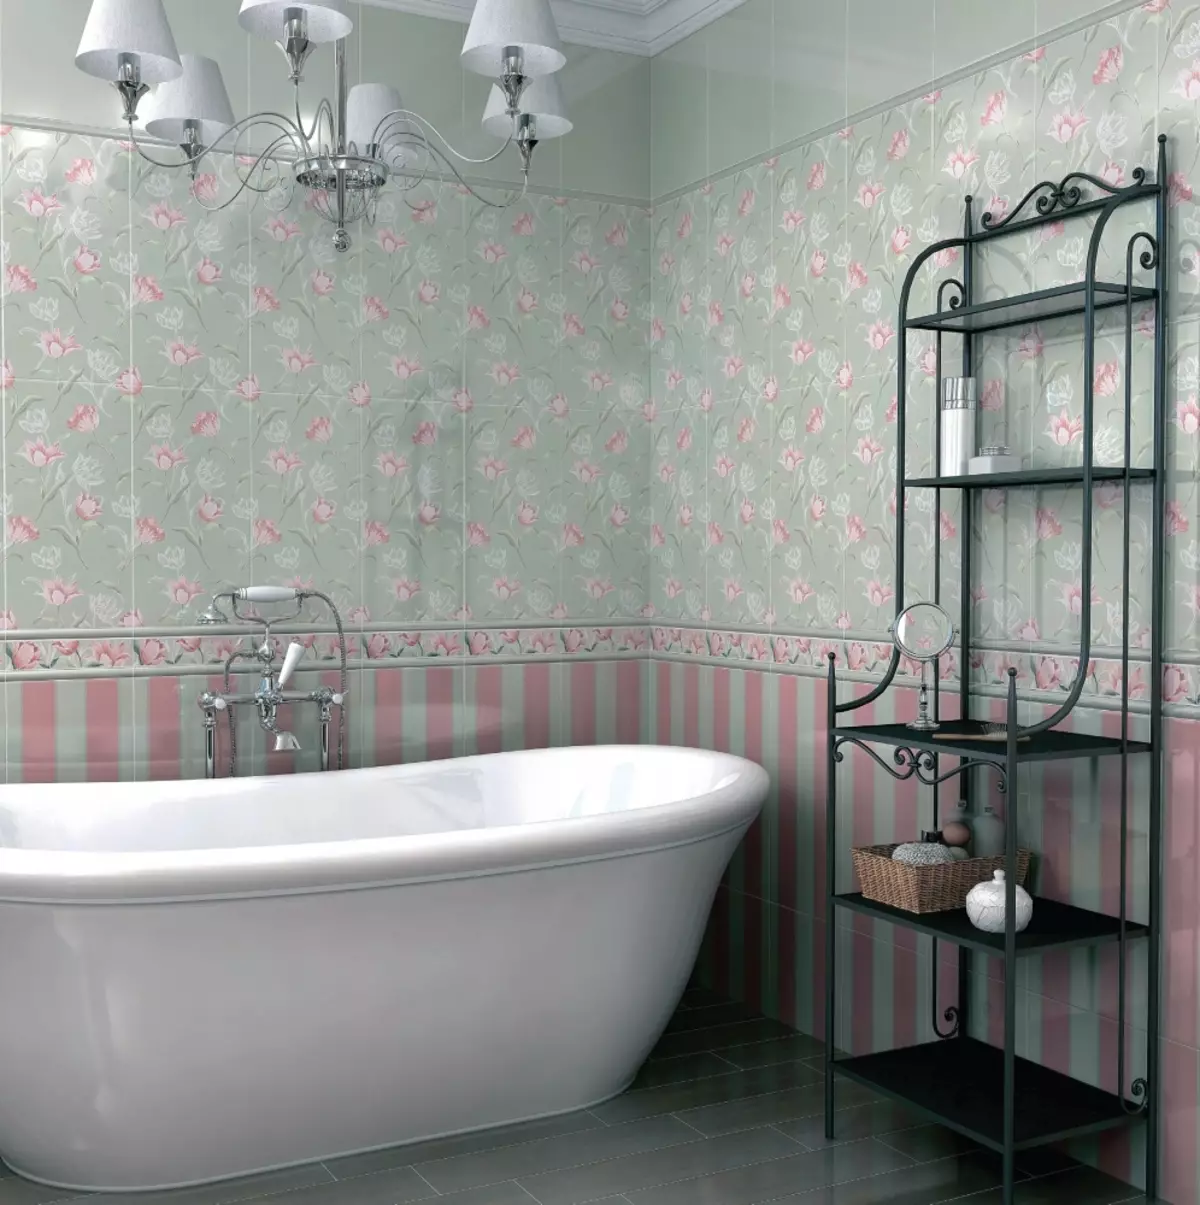 Tempes kamar mandi Rusia: keramik sareng ubin sanés pikeun kamar mandi produsén Rusia. Desain ubin produksi Rusia 10124_24